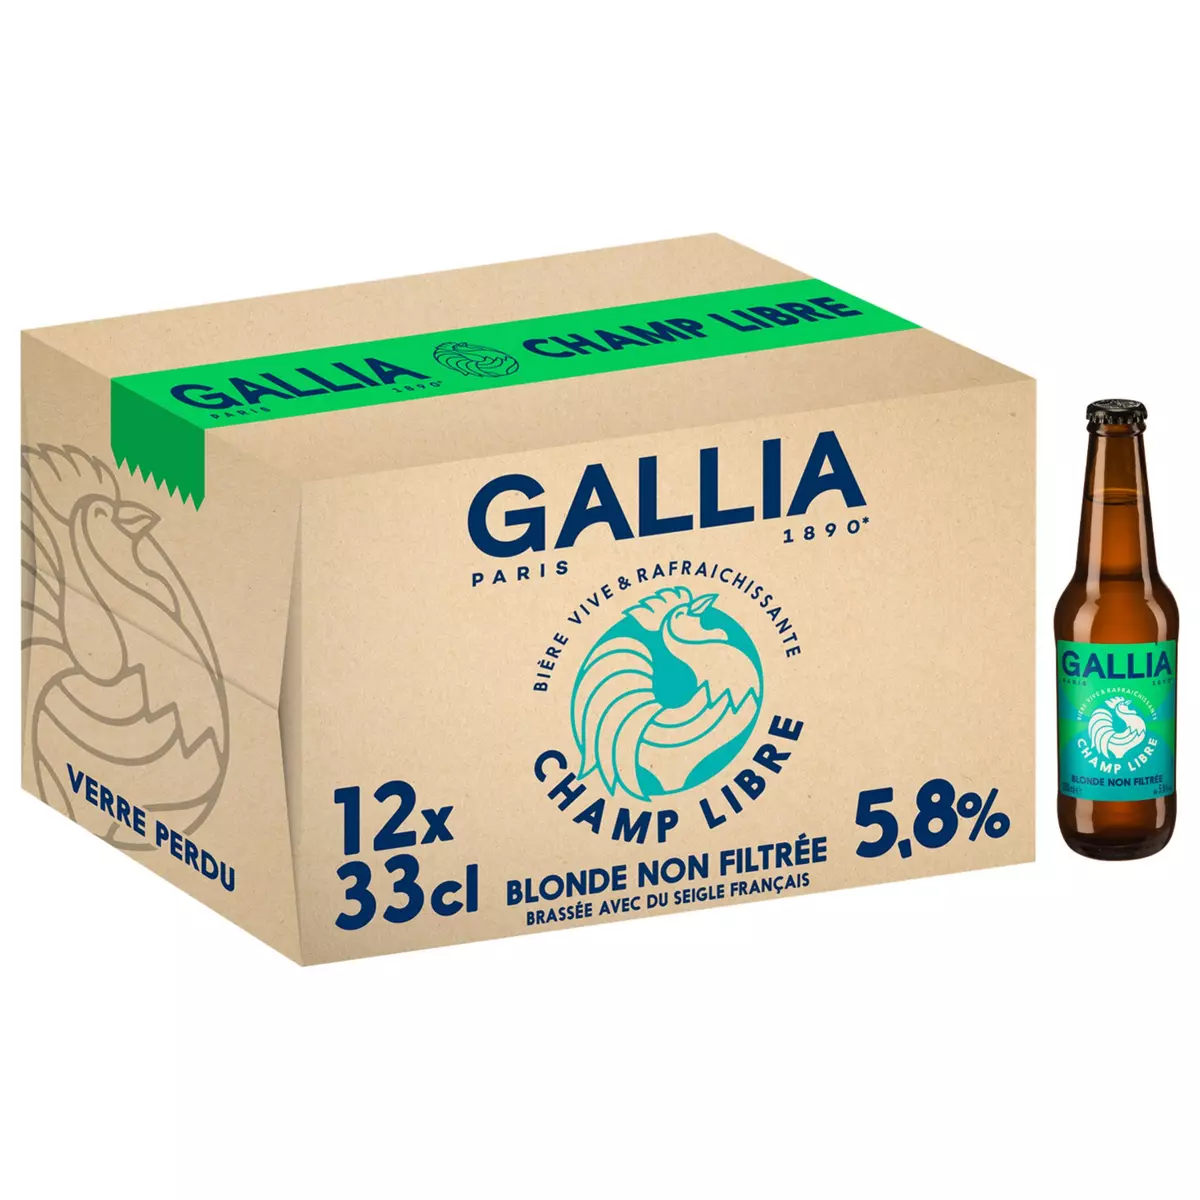 GALLIA Bière blonde Champ Libre 5.8% bouteilles 12x33cl